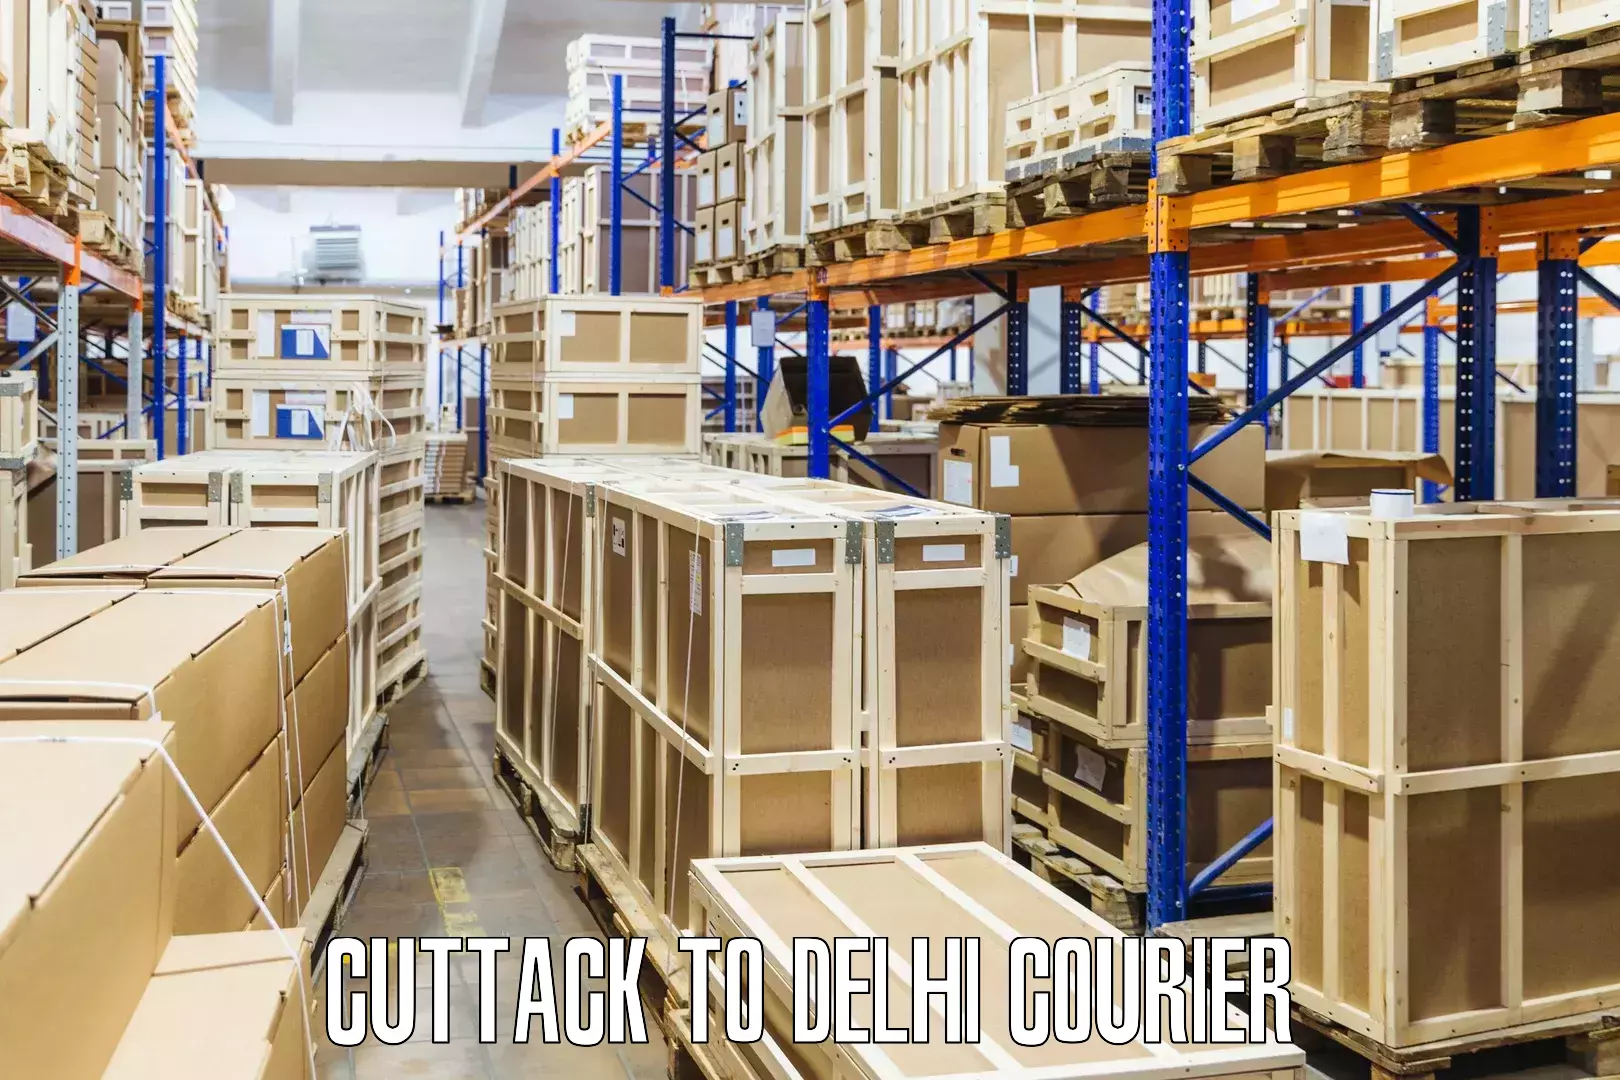 Fast delivery service in Cuttack to Jamia Hamdard New Delhi